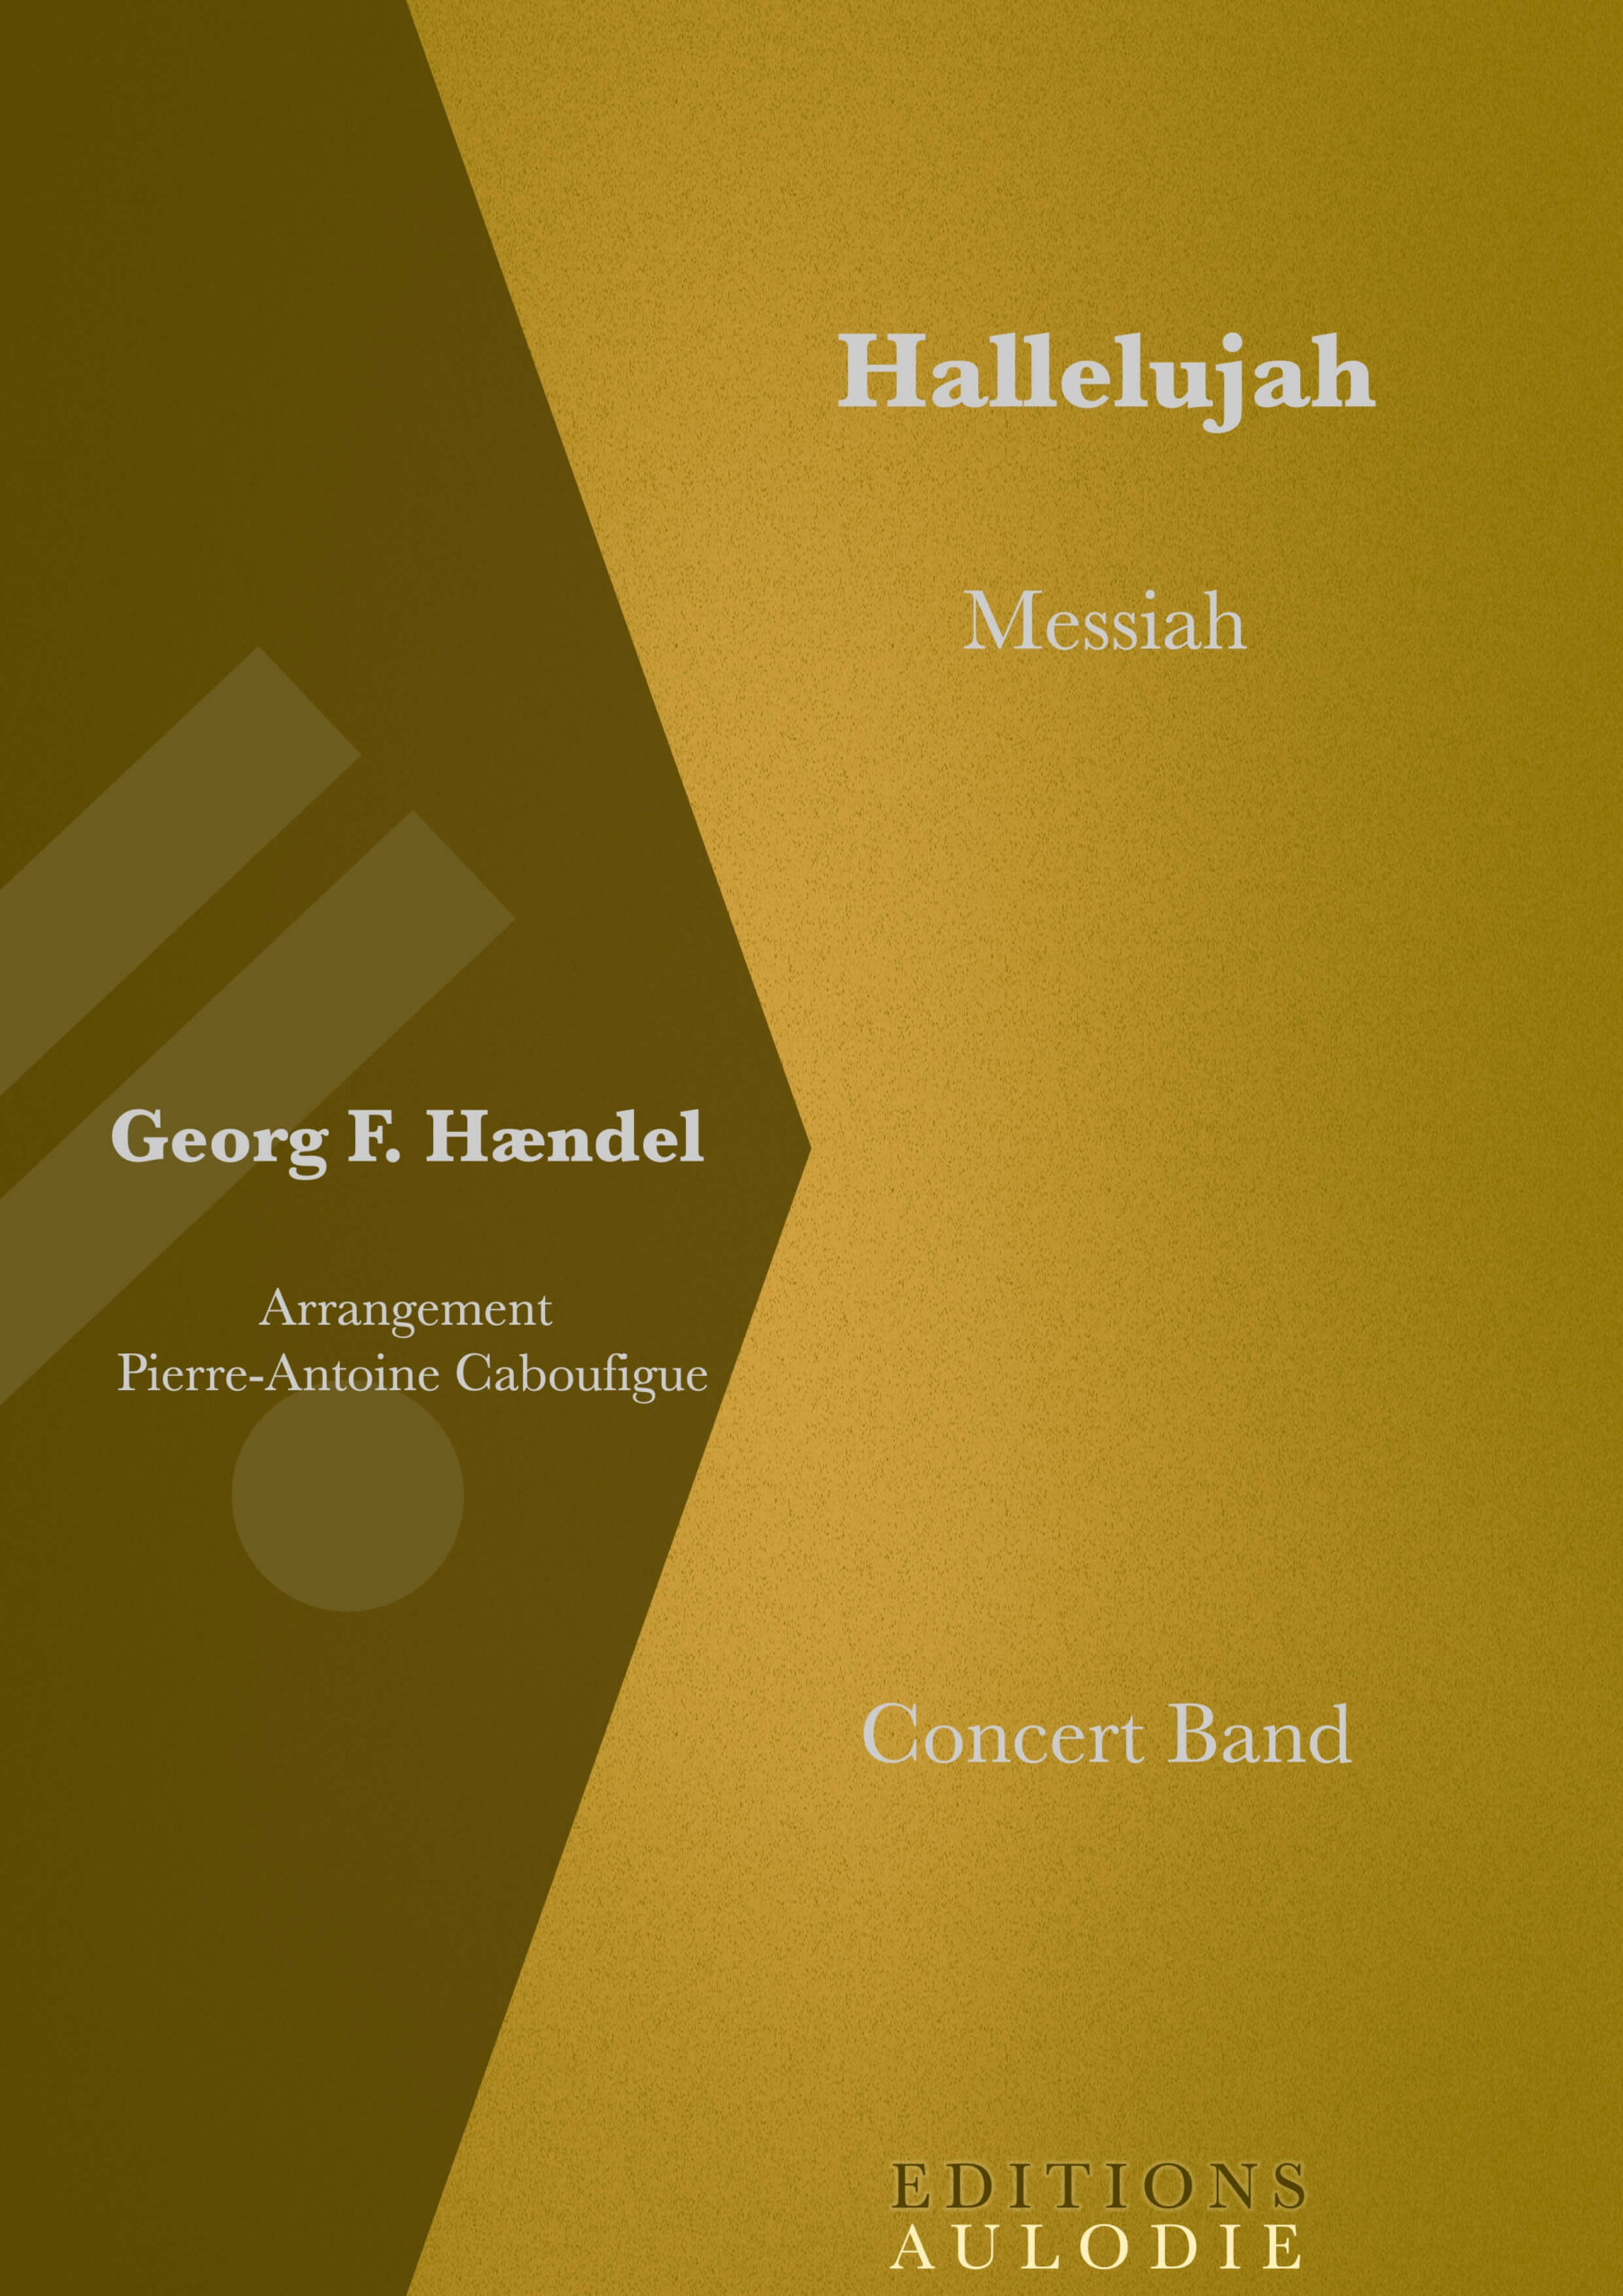 EA01038-Hallelujah-Messiah-Georg_Friedrich_Haendel-Concert_Band